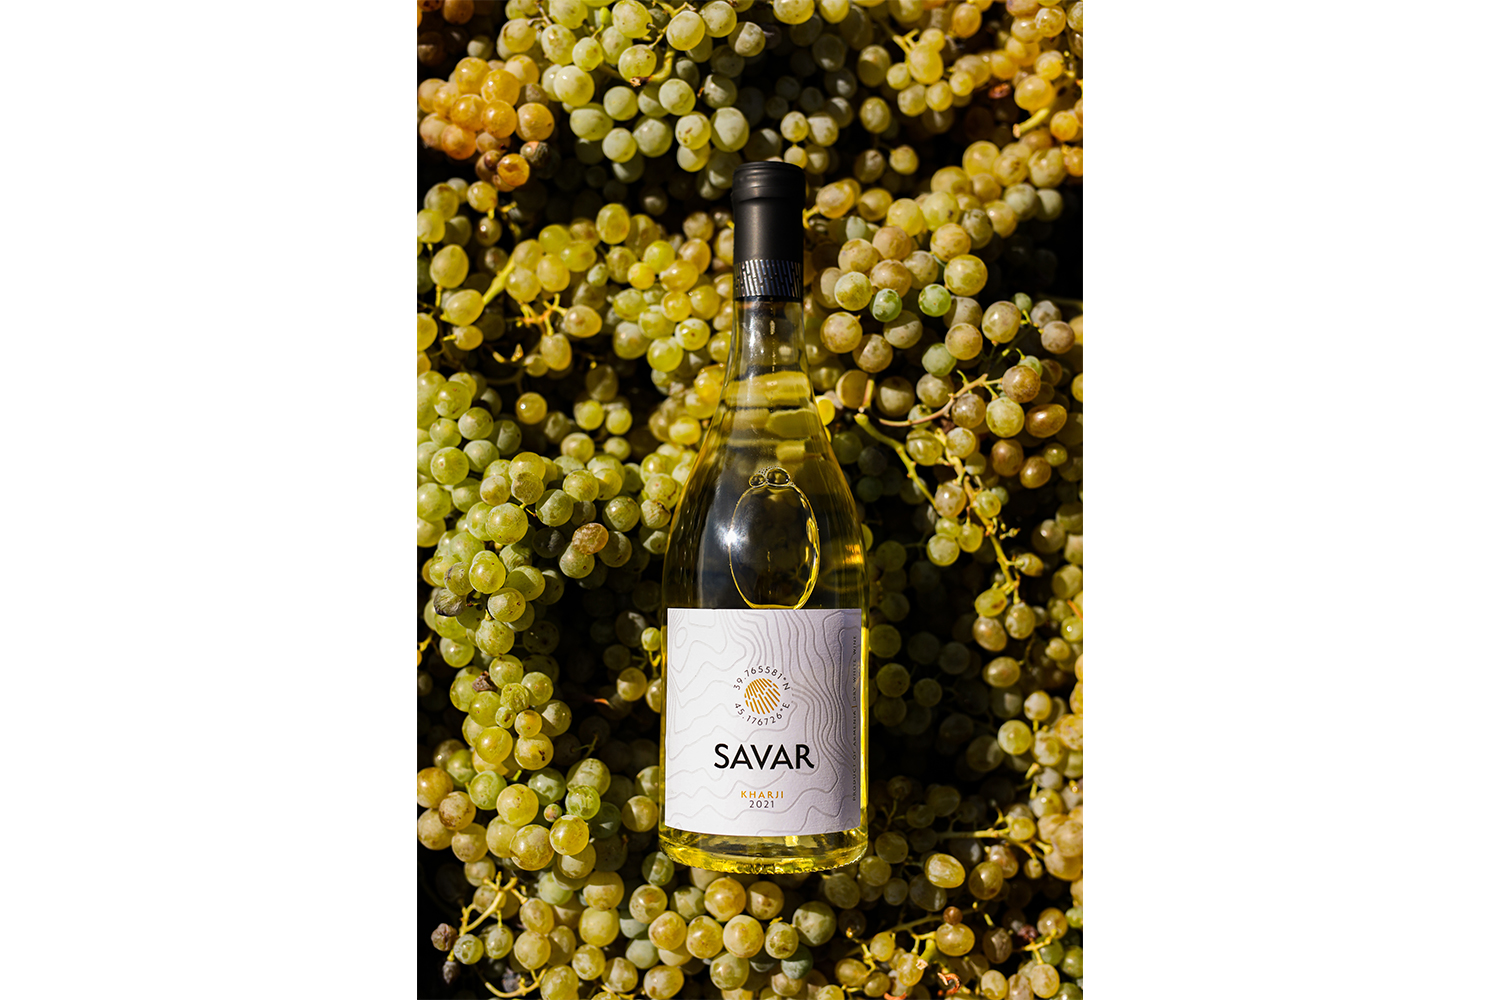 SAVAR-ը կներկայացնի առաջին հնեցված գինին Խաթուն Խարջի խաղողի տեսակից